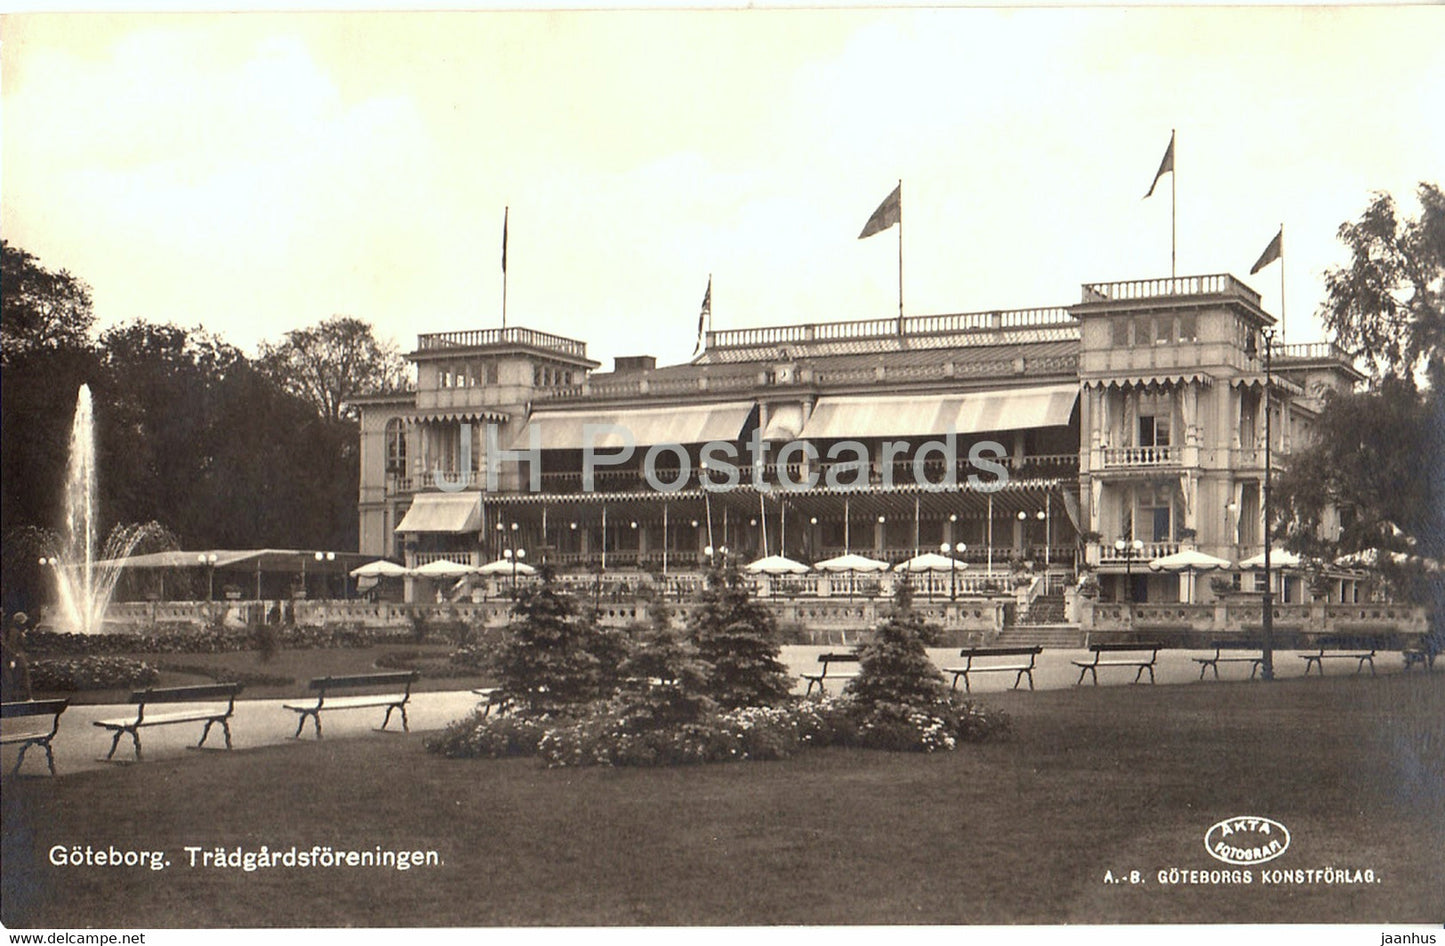 Goteborg - Tradgardsforeningen - 93 - old postcard - Sweden - unused - JH Postcards